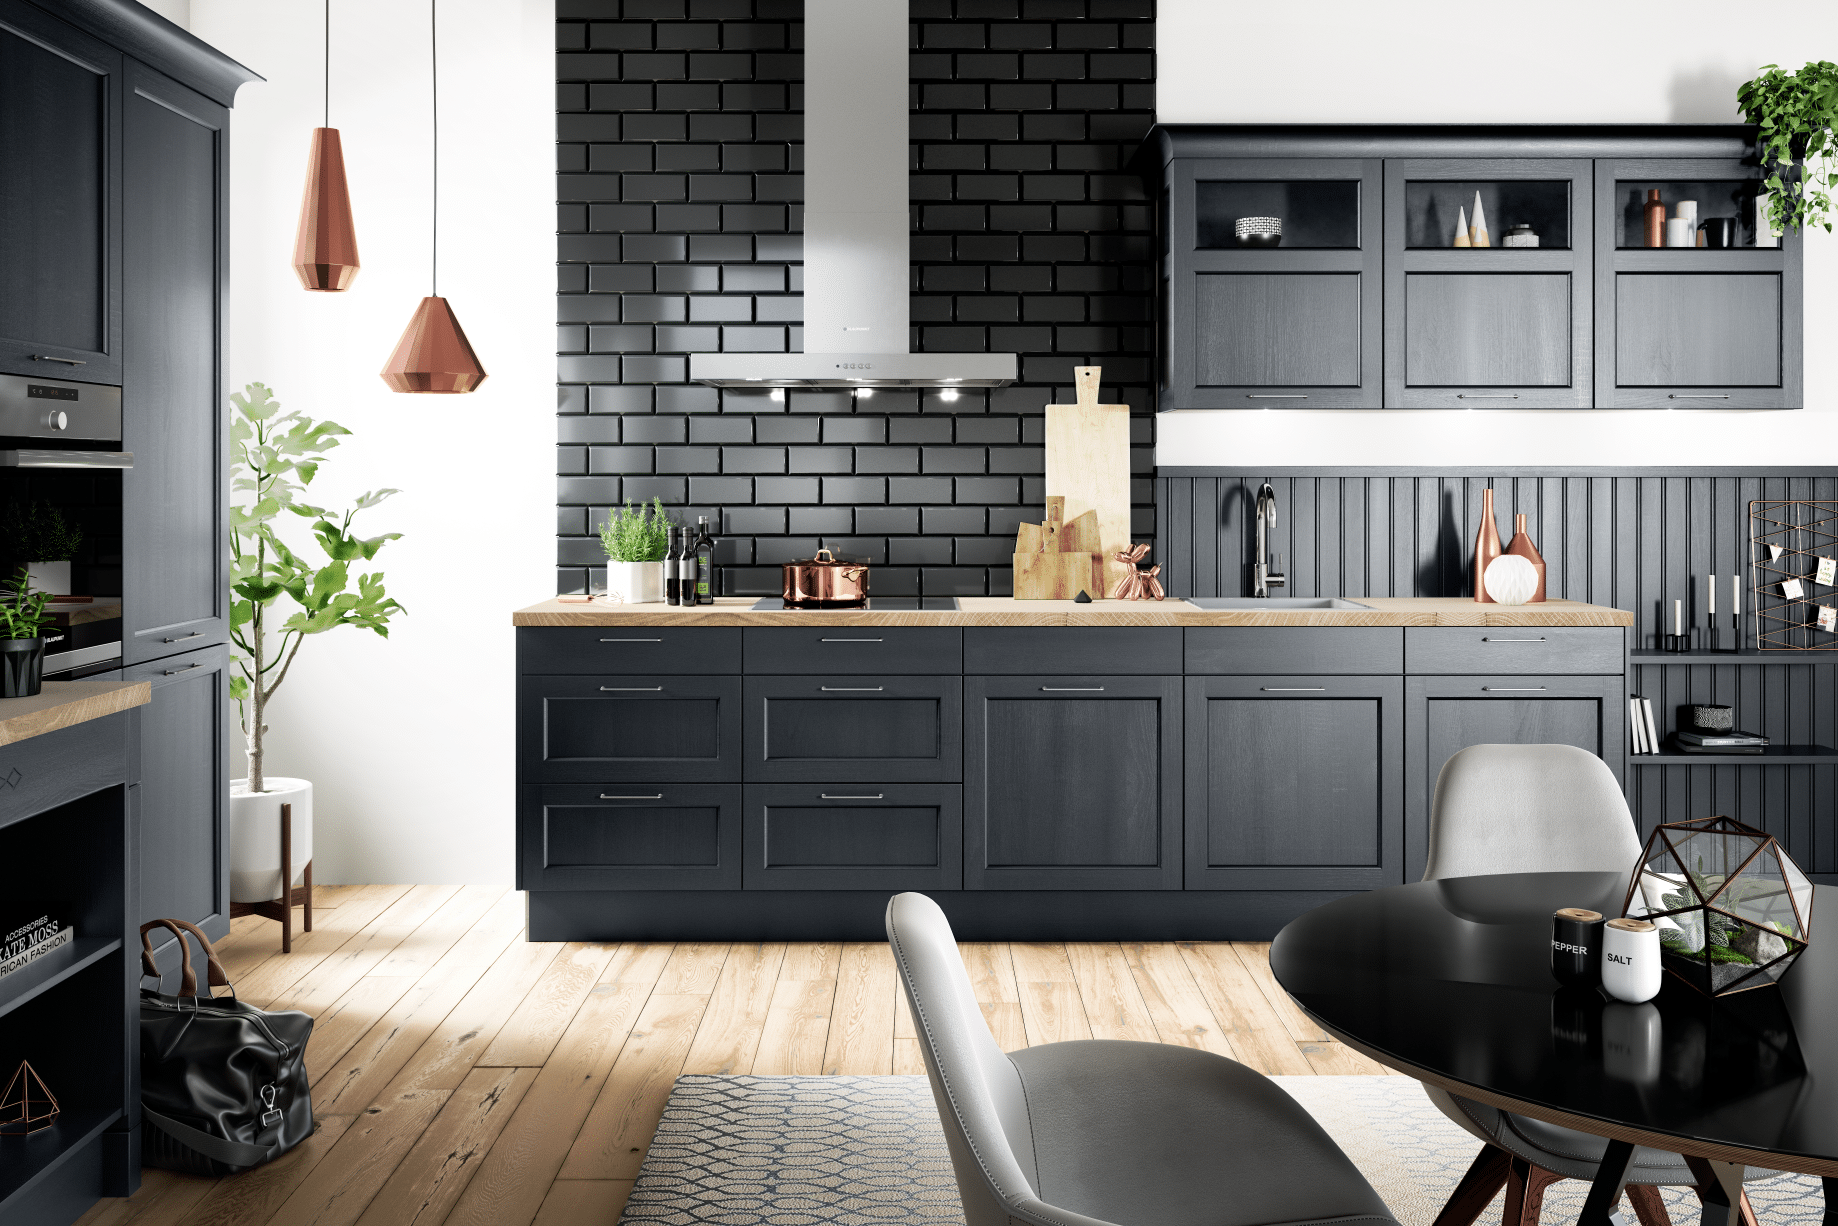 Offene Wohnküche im Landhaus-Stil modern interpretiert, mit schwarzen Fronten, von Häcker Küchen, erhältlich im WOHNHAUS Grill & Ronacher.